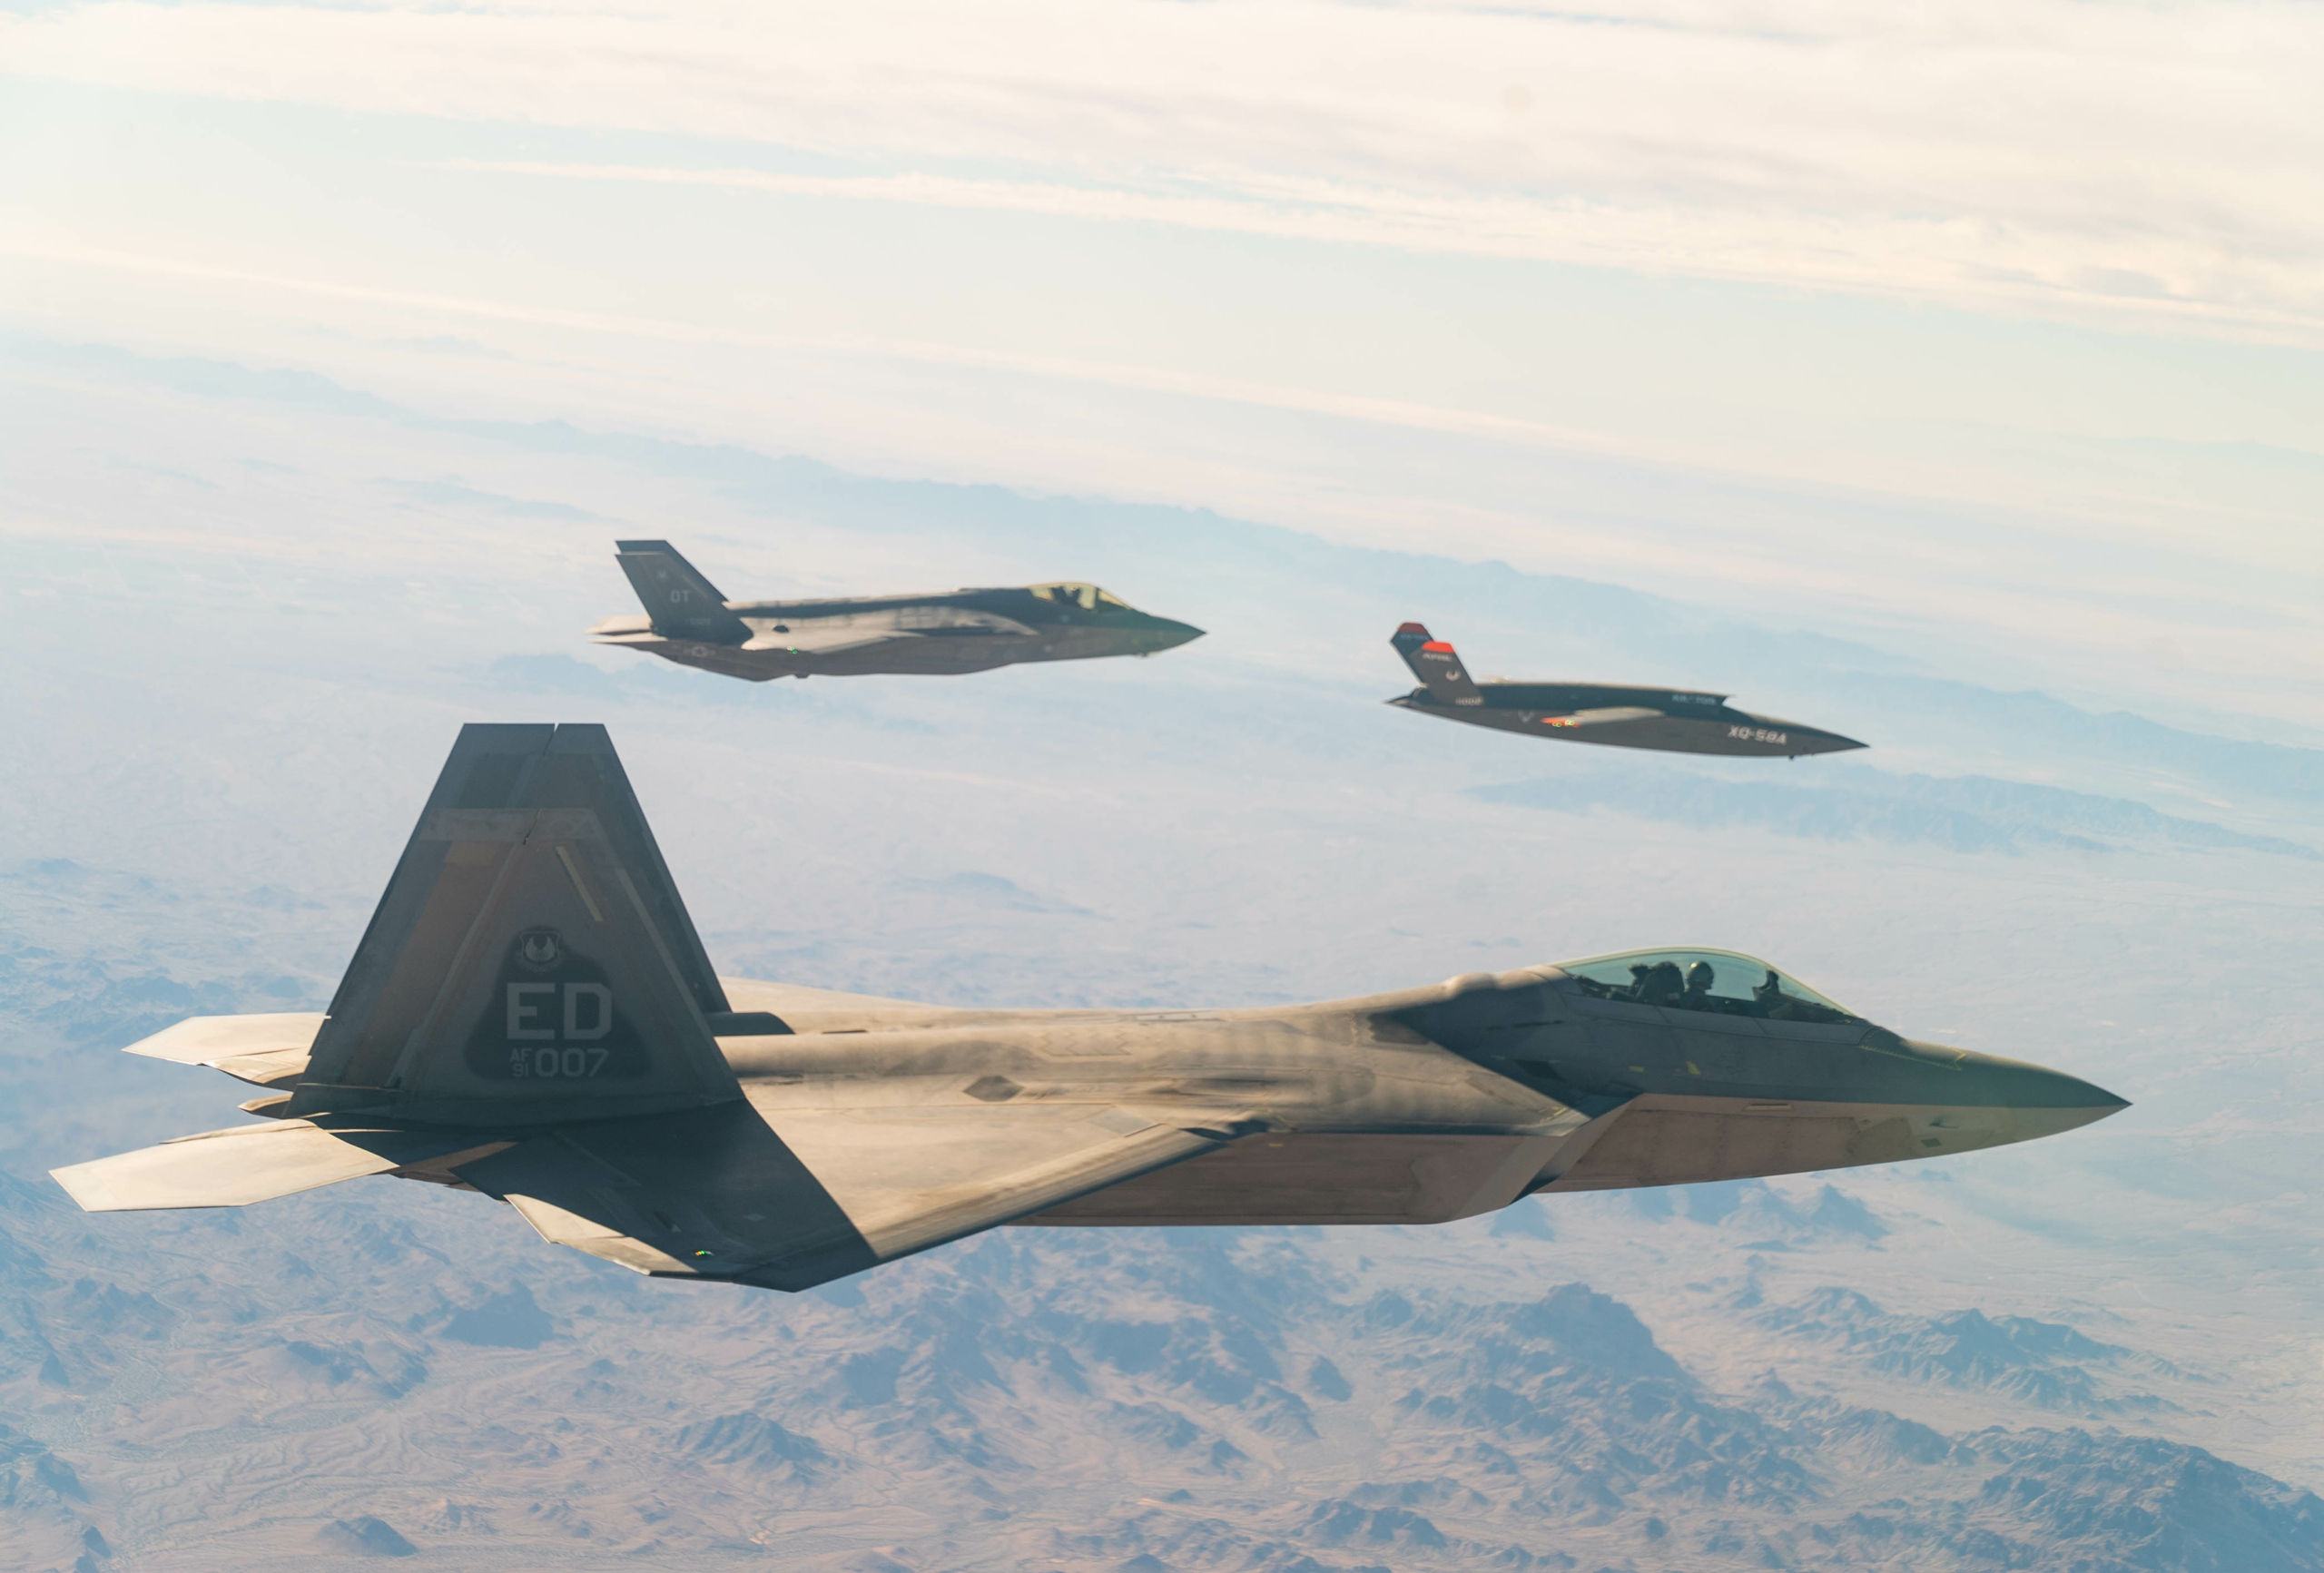 Các chiến đấu cơ F-22 và F-35 của Không quân Hoa Kỳ cùng phi cơ điều khiển từ xa có chi phí thấp XQ-58A Valkyrie đã bay trên bầu trời Trường thử nghiệm Yuma của Lục quân Hoa Kỳ vào ngày 09/12/2020. (Ảnh: Không quân Hoa Kỳ)